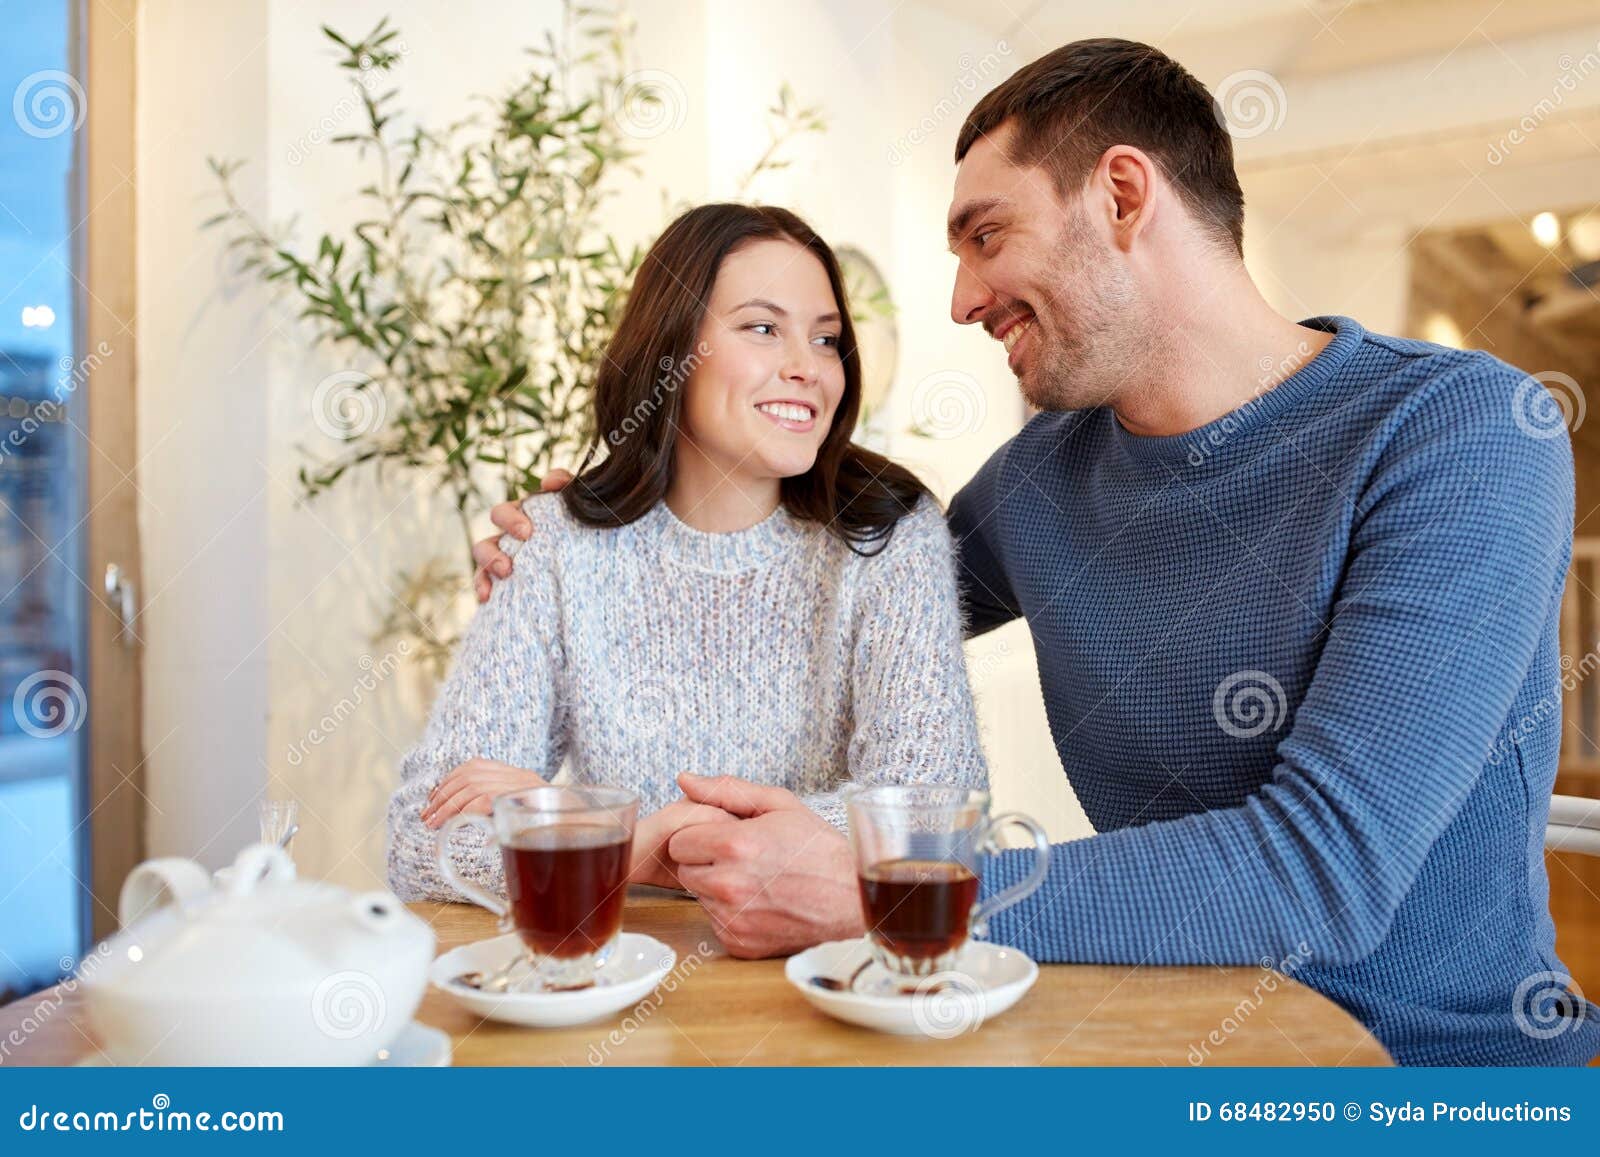 Нормальным будут жена и дети. Семья пьет чай. Счастливая пара девушка наливает чай. Супружеская пара в возрасте пьёт чай. Пьем чай вдвоем в обнимку.